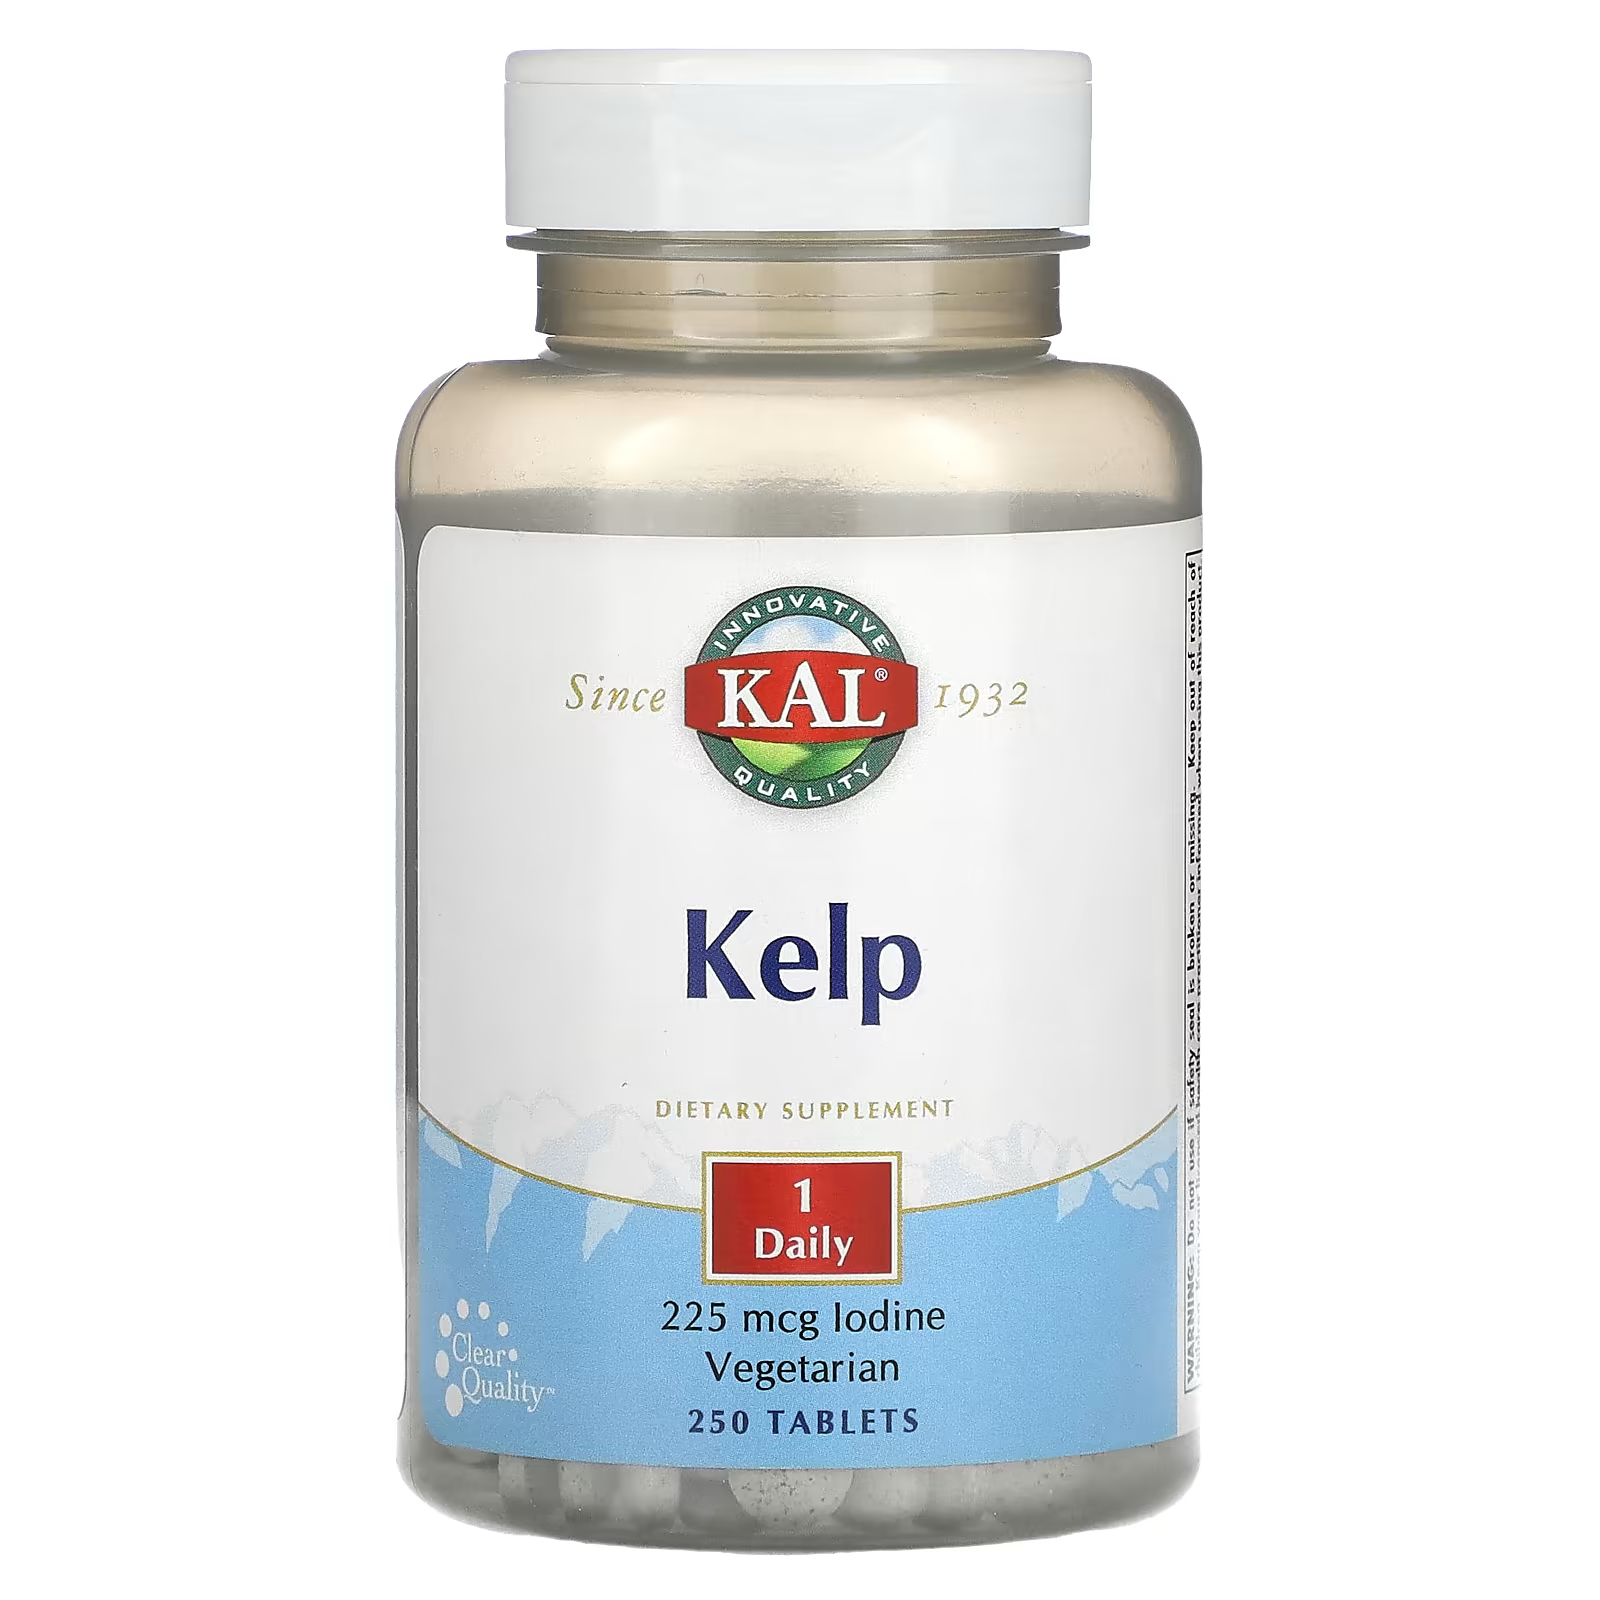 Пищевая добавка Kal келп, 250 таблеток пищевая добавка kal кальций магний 250 таблеток